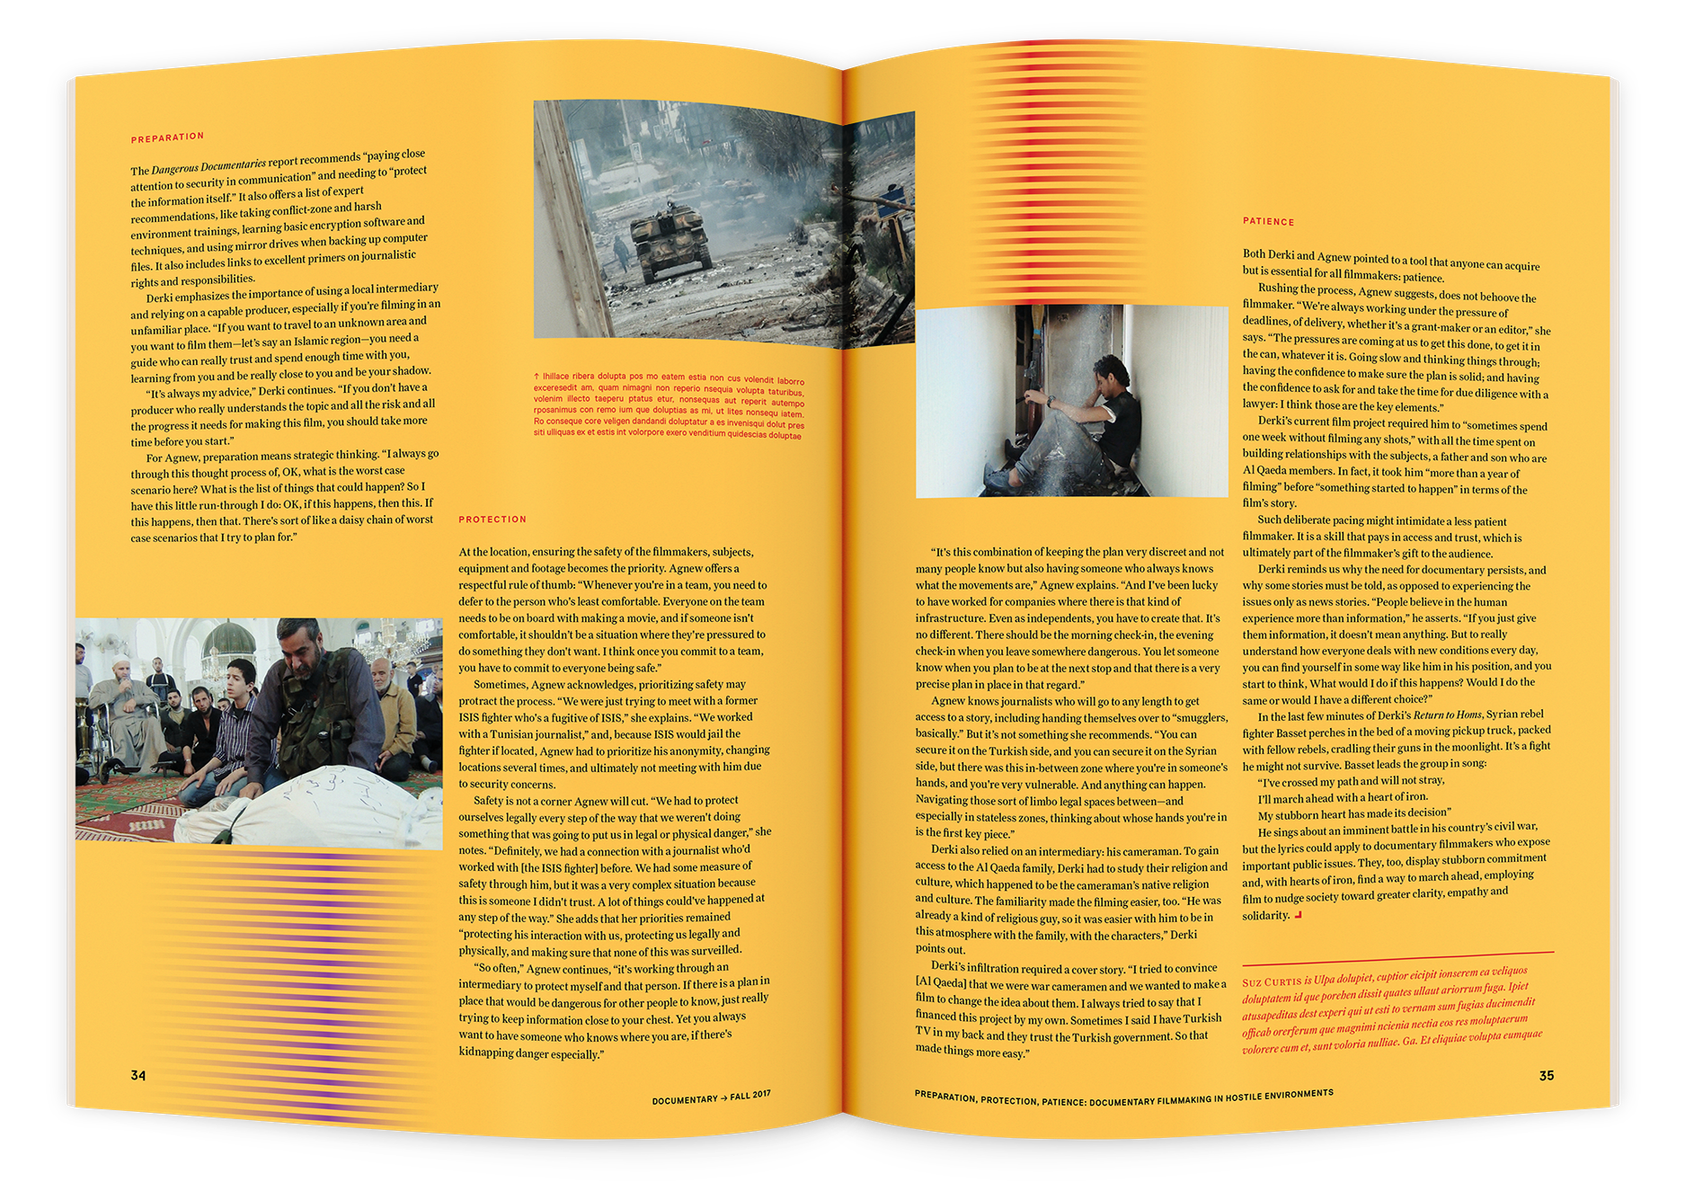 Documentary editorial film magazine spread design by Susan Q Yin